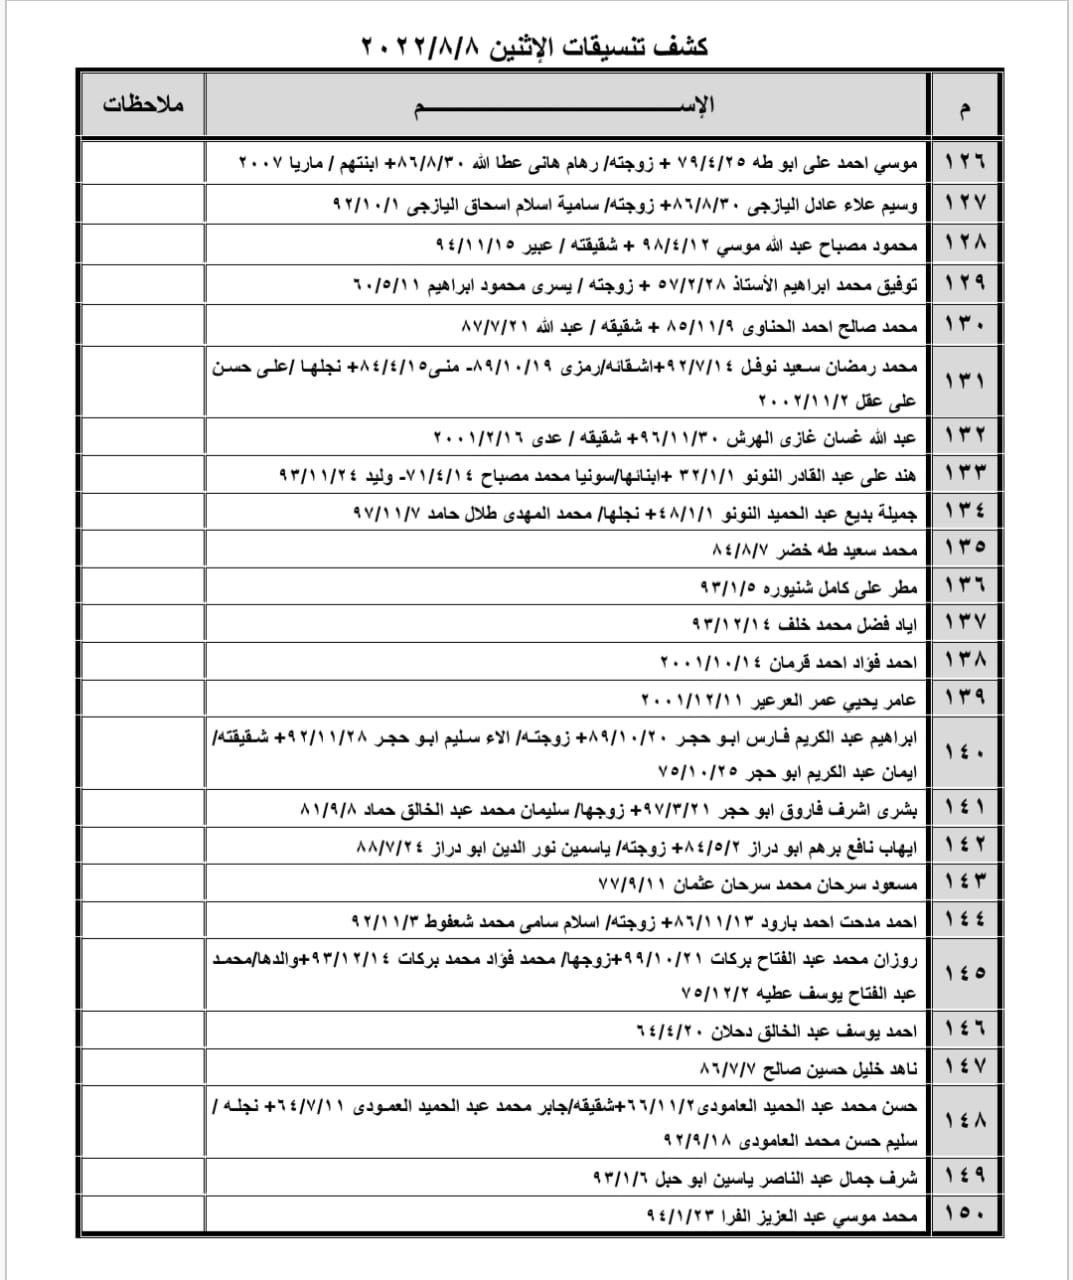 بالأسماء: كشف "تنسيقات مصرية" للسفر عبر معبر رفح غدًا الإثنين 8 أغسطس 2022